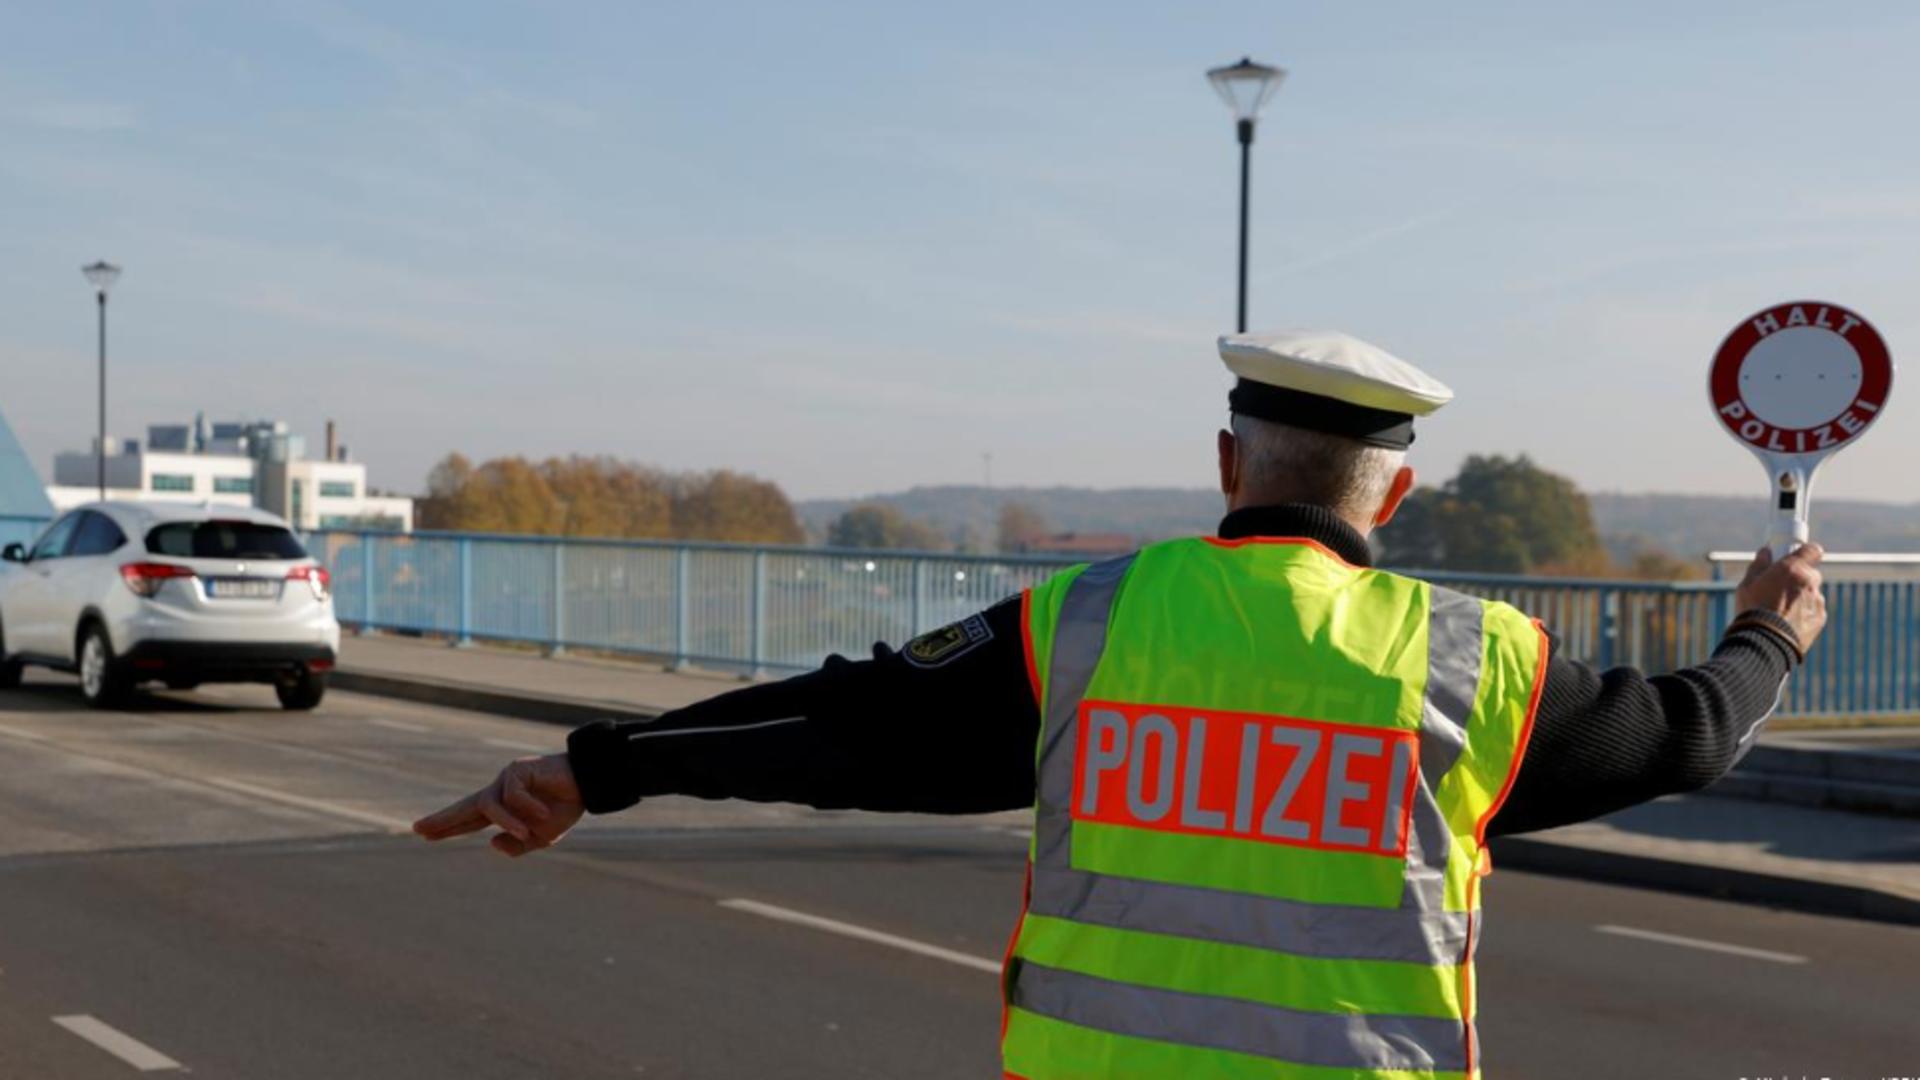 Spațiul Schengen. Germania reintroduce controalele la frontieră împotriva migrației ilegale - Sunt vizate intrările prin Polonia și Cehia